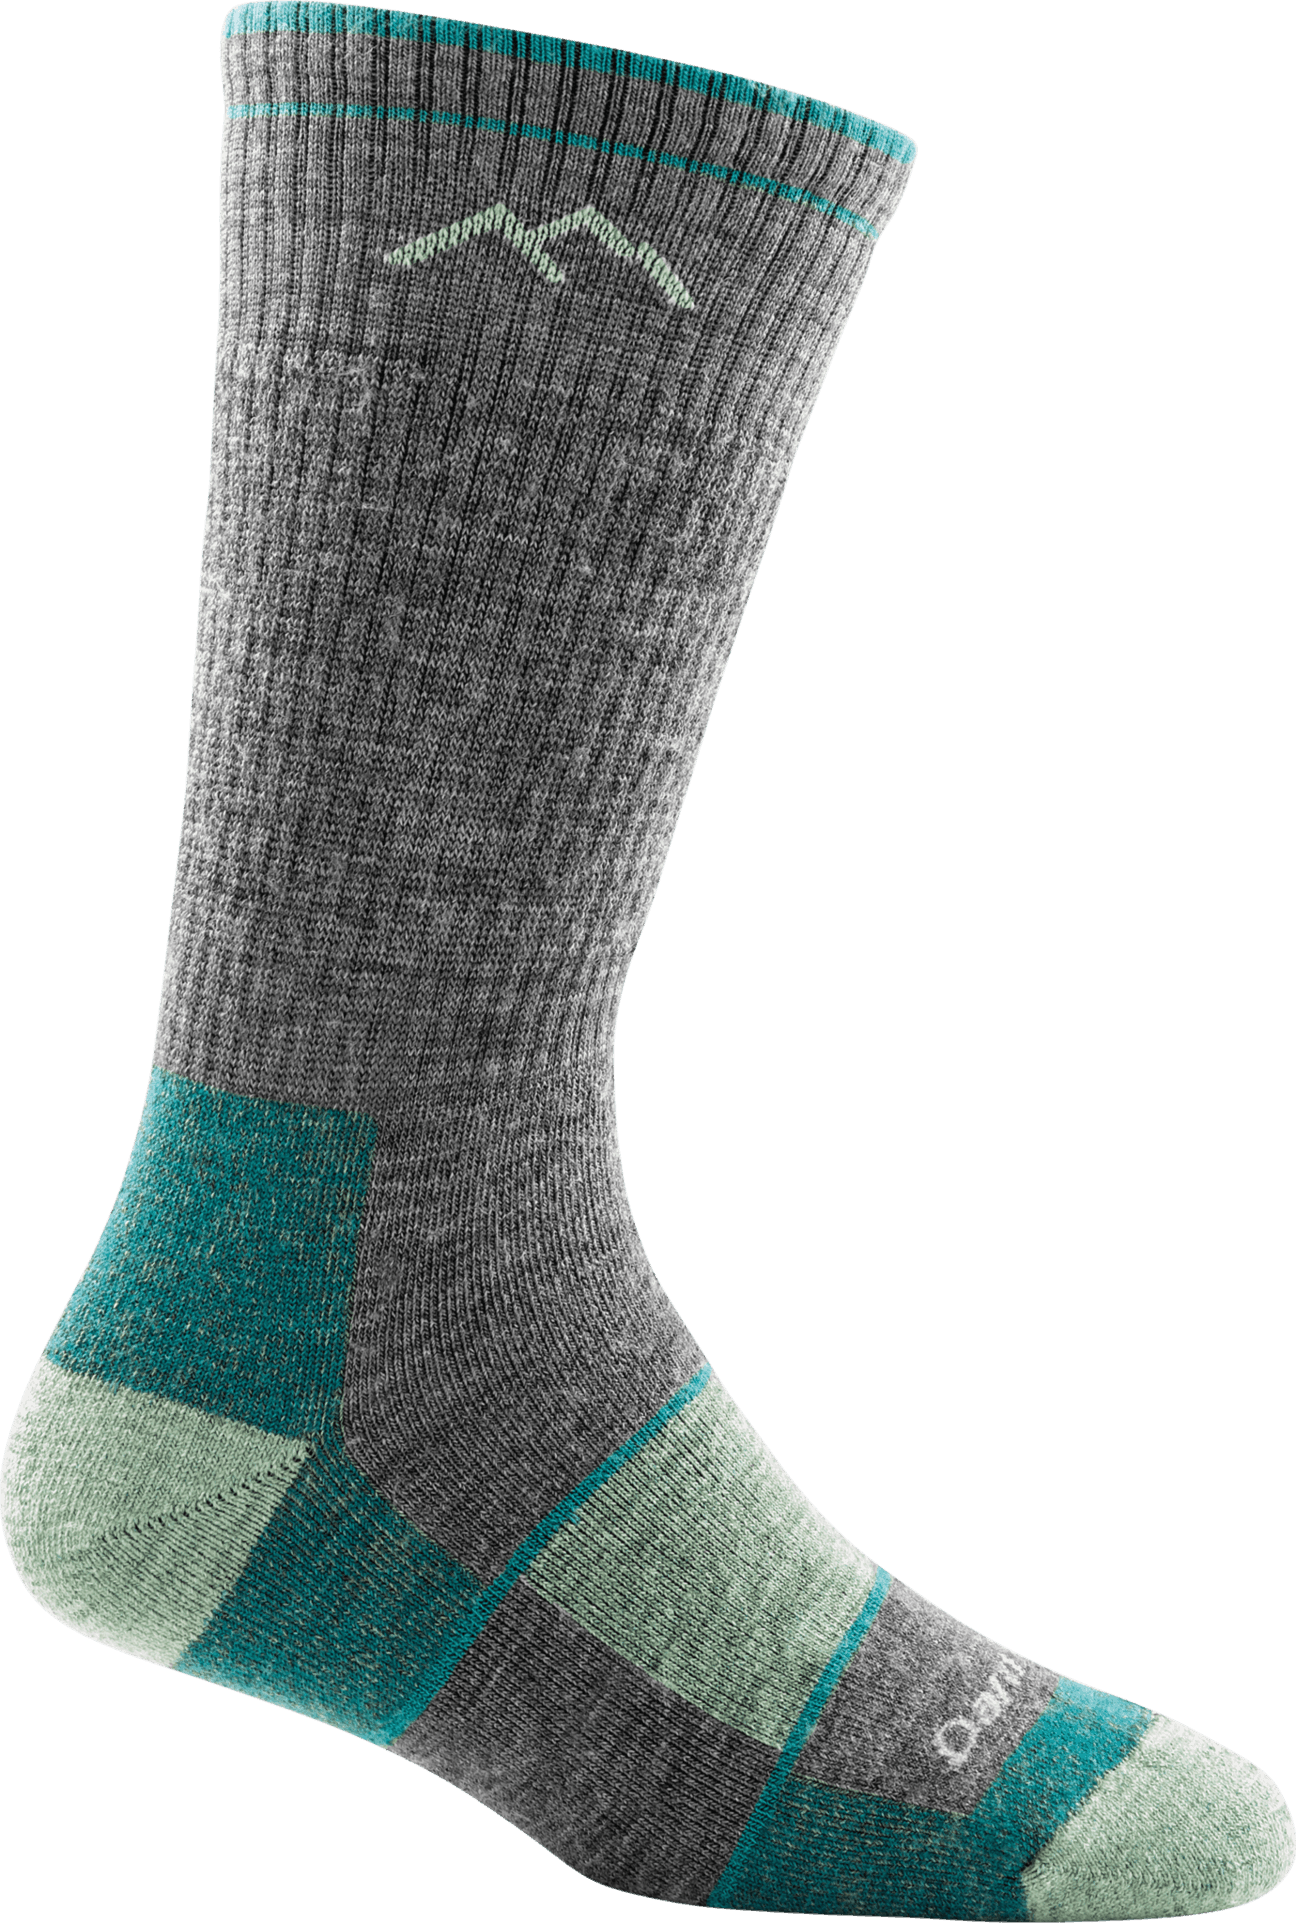 Hiker, Women's Full Cushion Boot Sock #1908 - Darn Tough - The Sock Monster